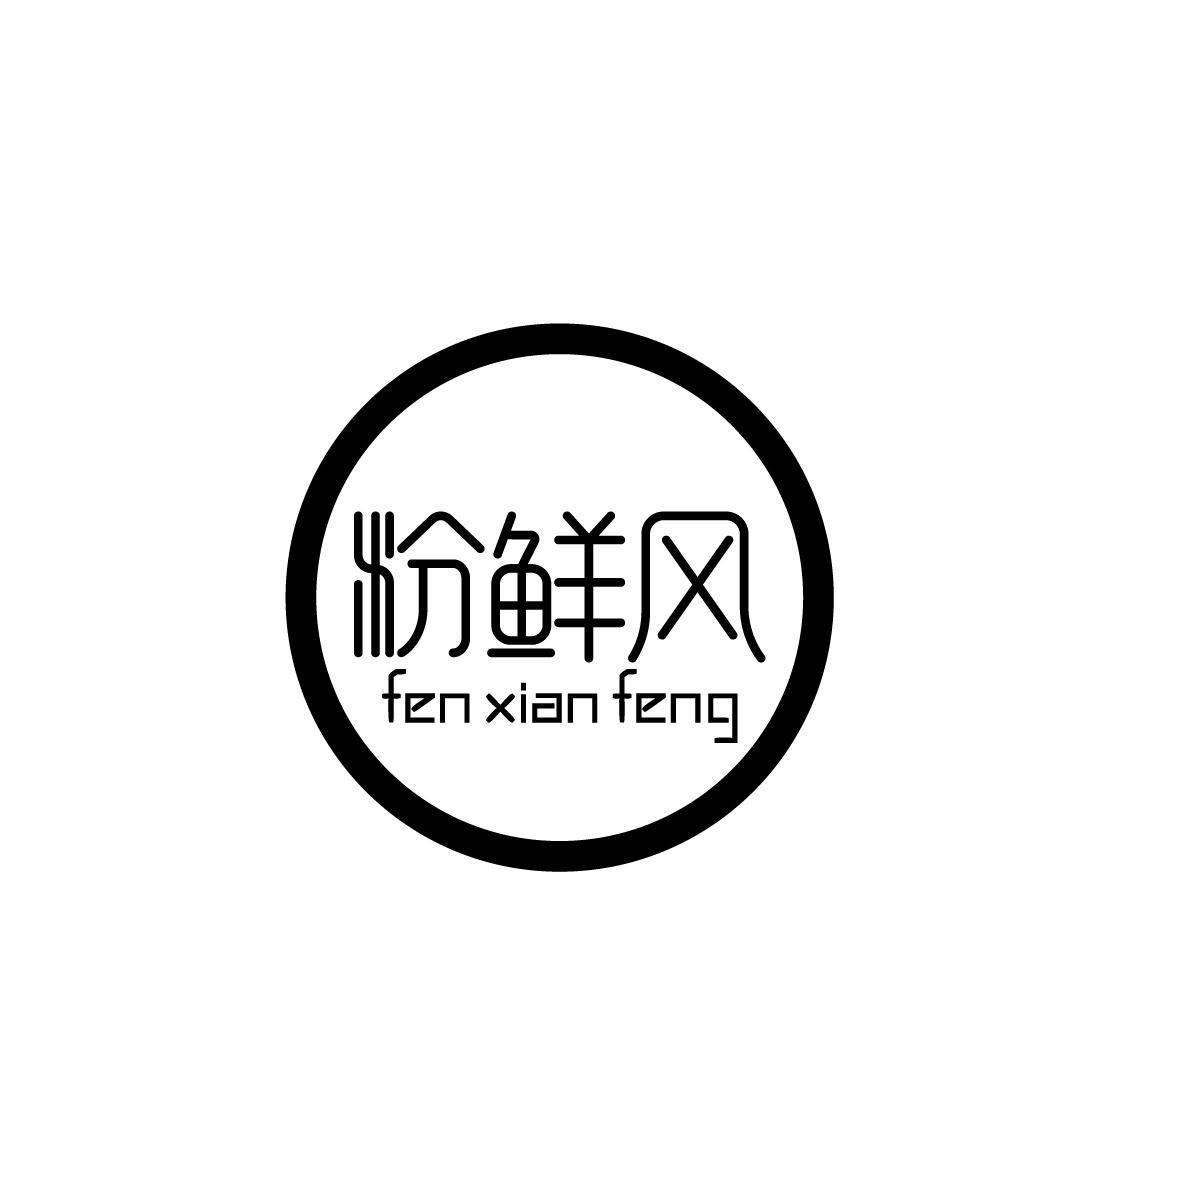 粉鲜风fenxianfeng